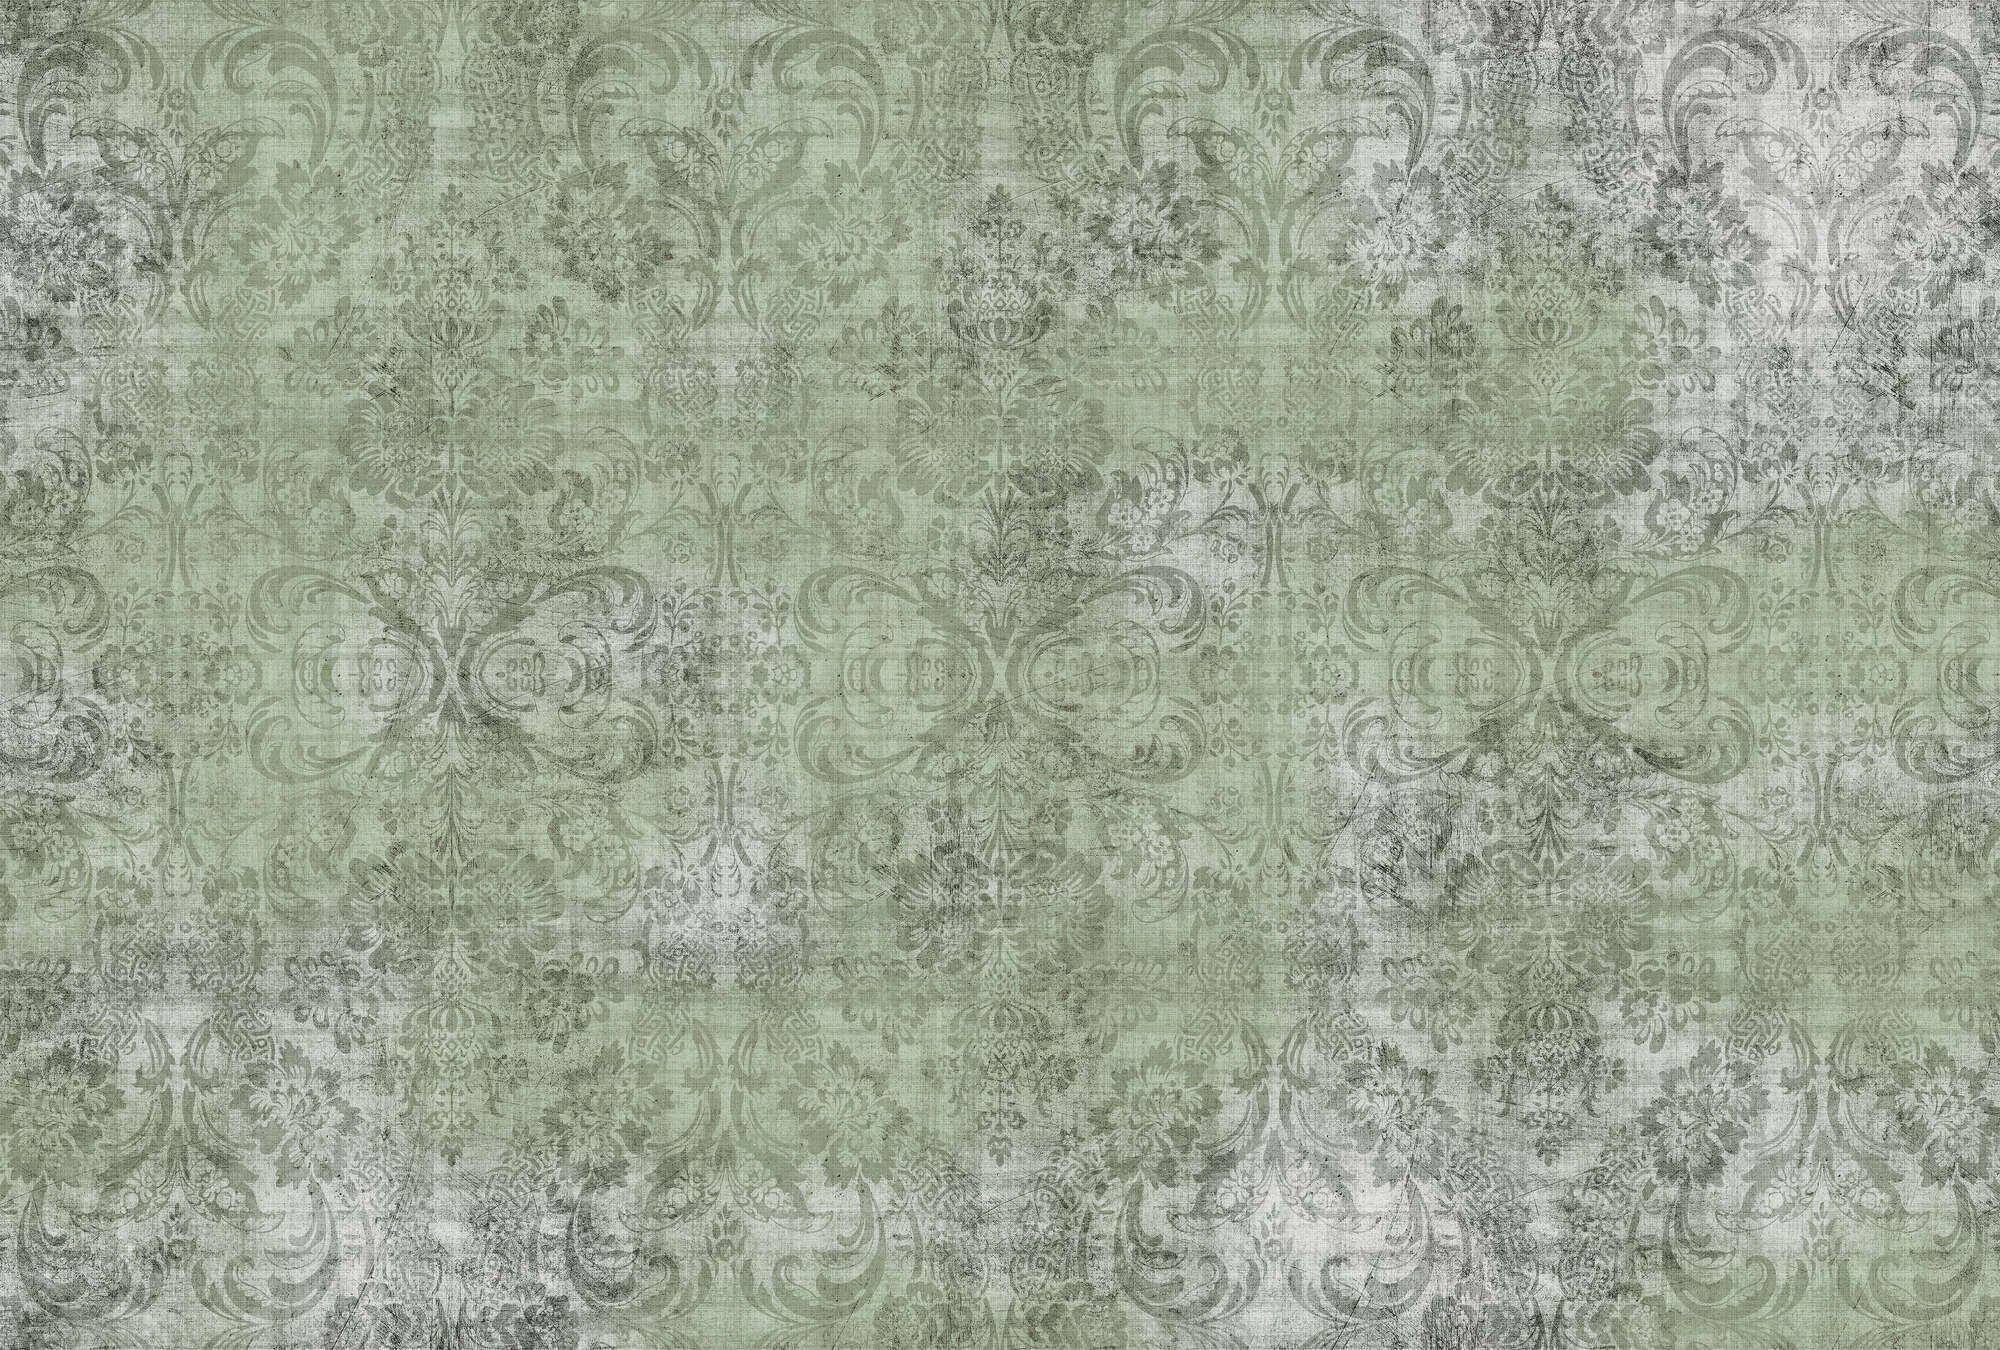             Oud damast 2 - Ornamenten op groen gevlekt behang - Natuurlijke linnenstructuur - Groen | Premium glad vlies
        